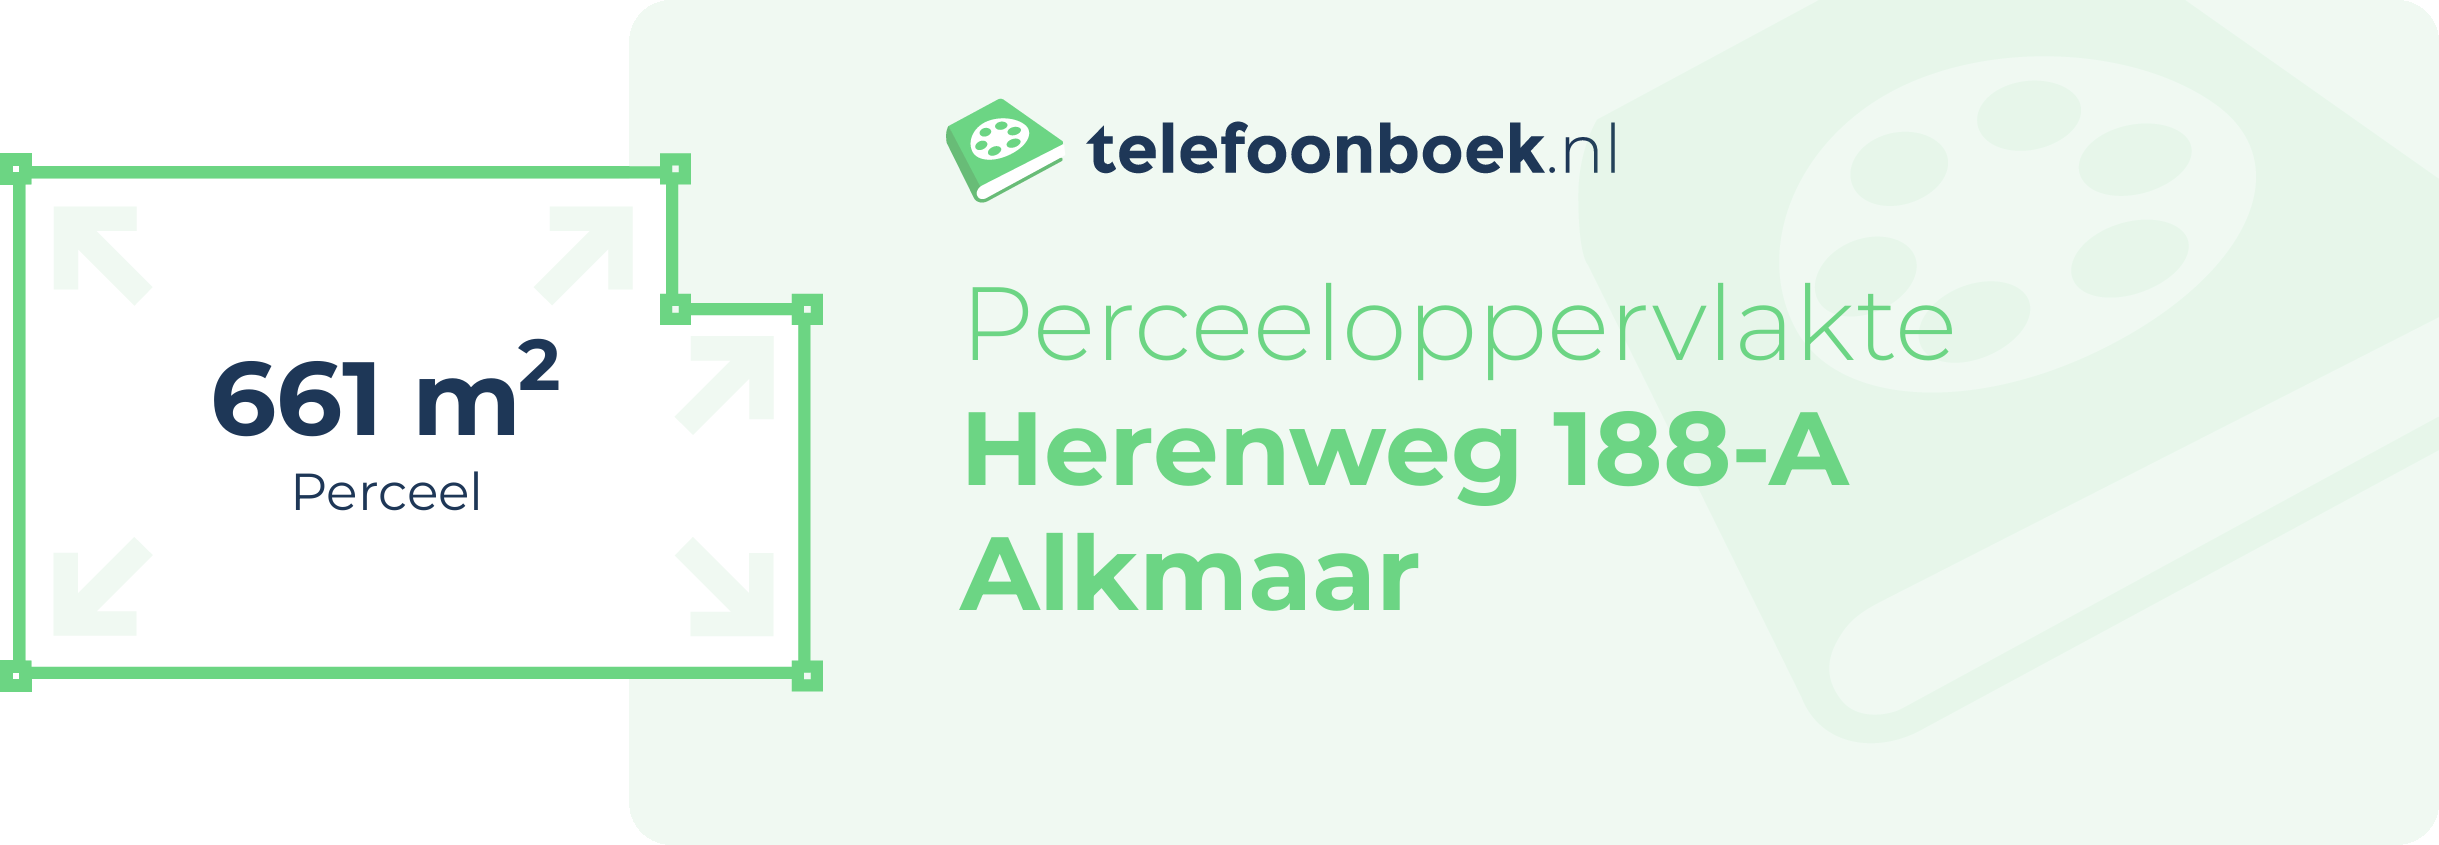 Perceeloppervlakte Herenweg 188-A Alkmaar